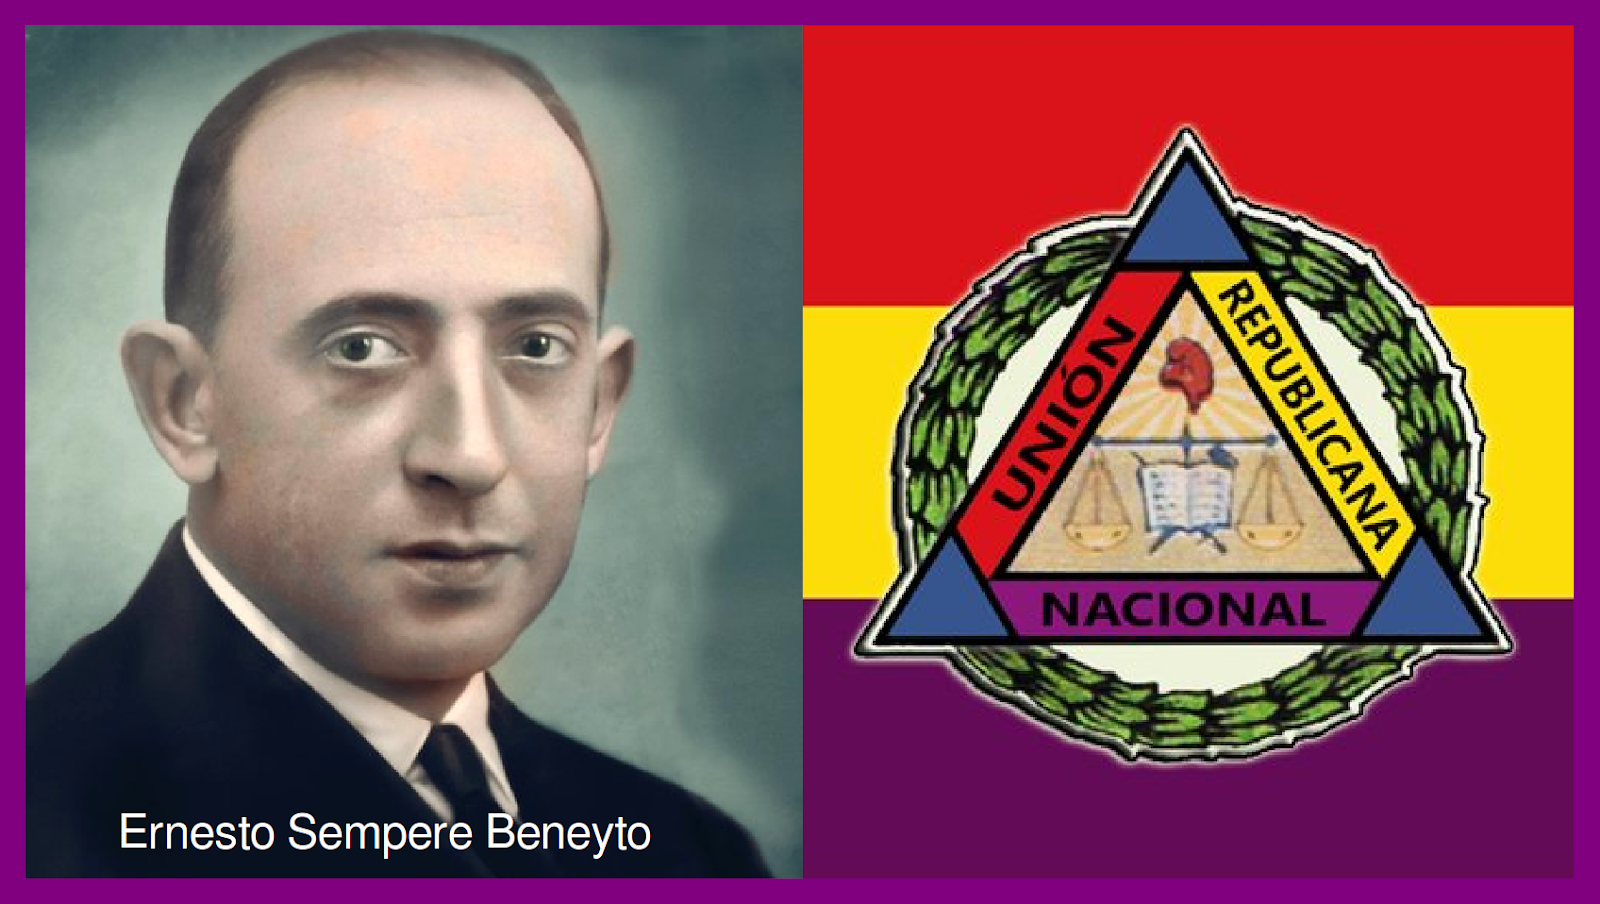 ERNESTO SEMPERE BENEYTO, REPUBLICANO liberal-conservador, ingeniero y  combatiente ANTIFASCISTA, fue FUSILADO por los franquistas en Ciudad Real  en 1940 | RecueRda RepúBlica, documento memoria